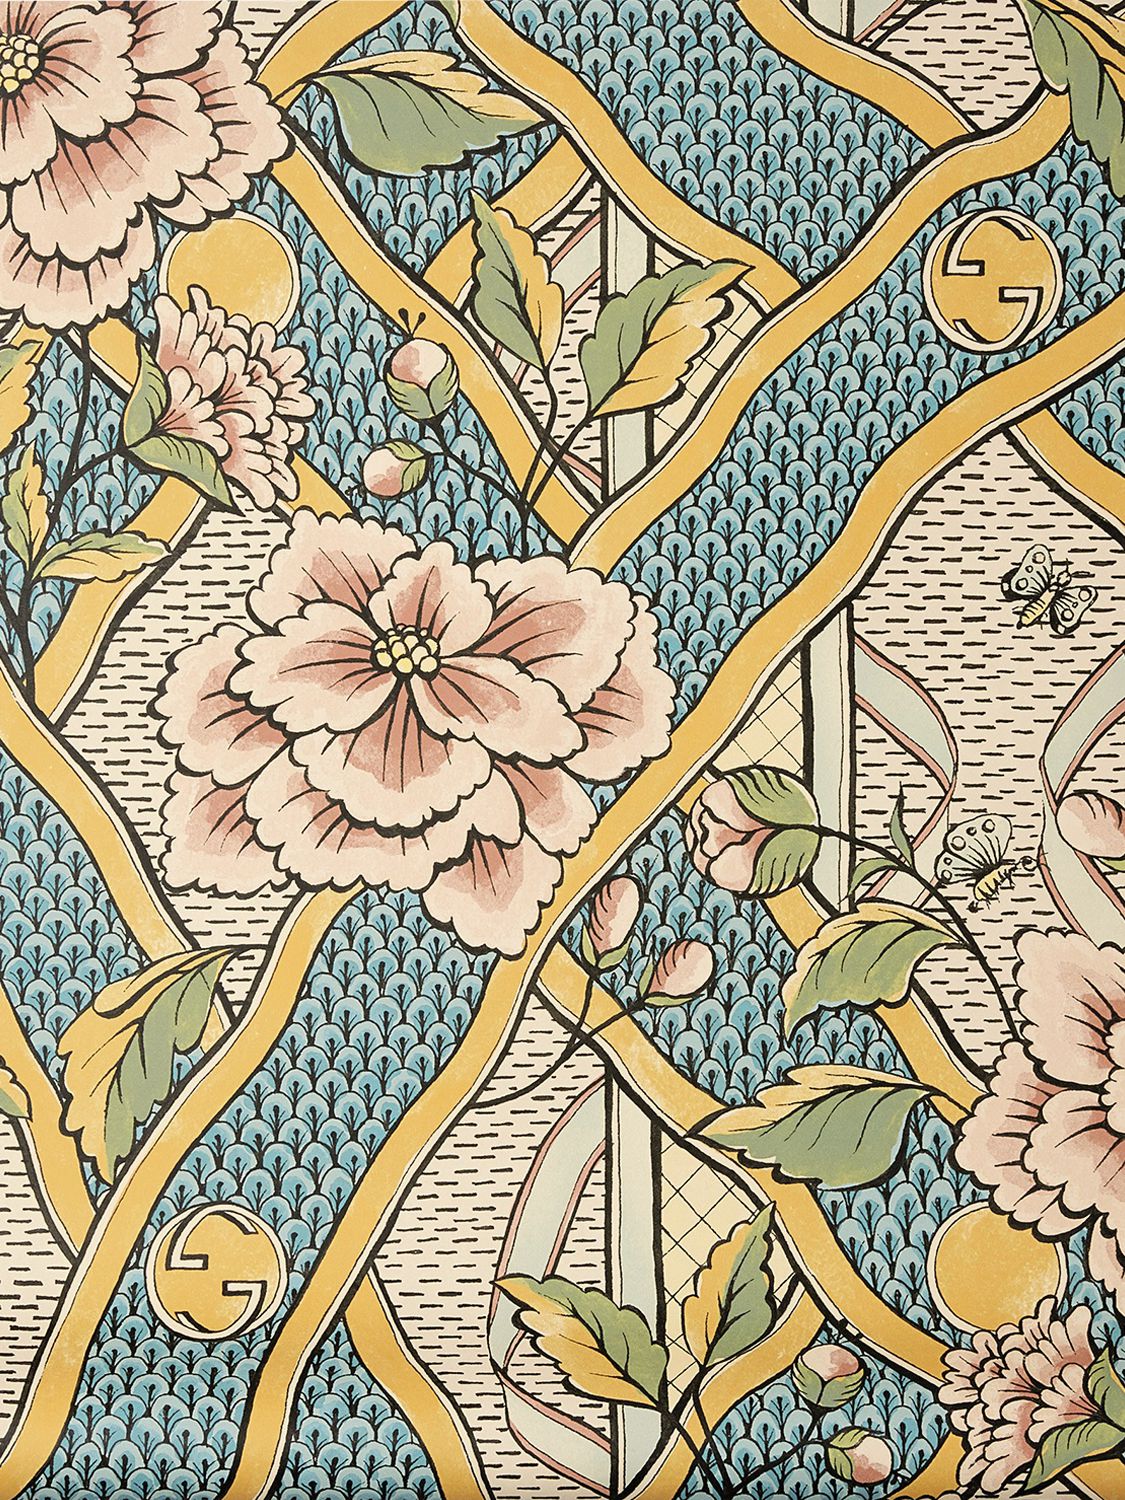 Gucci Herbarium Printed Wallpaper